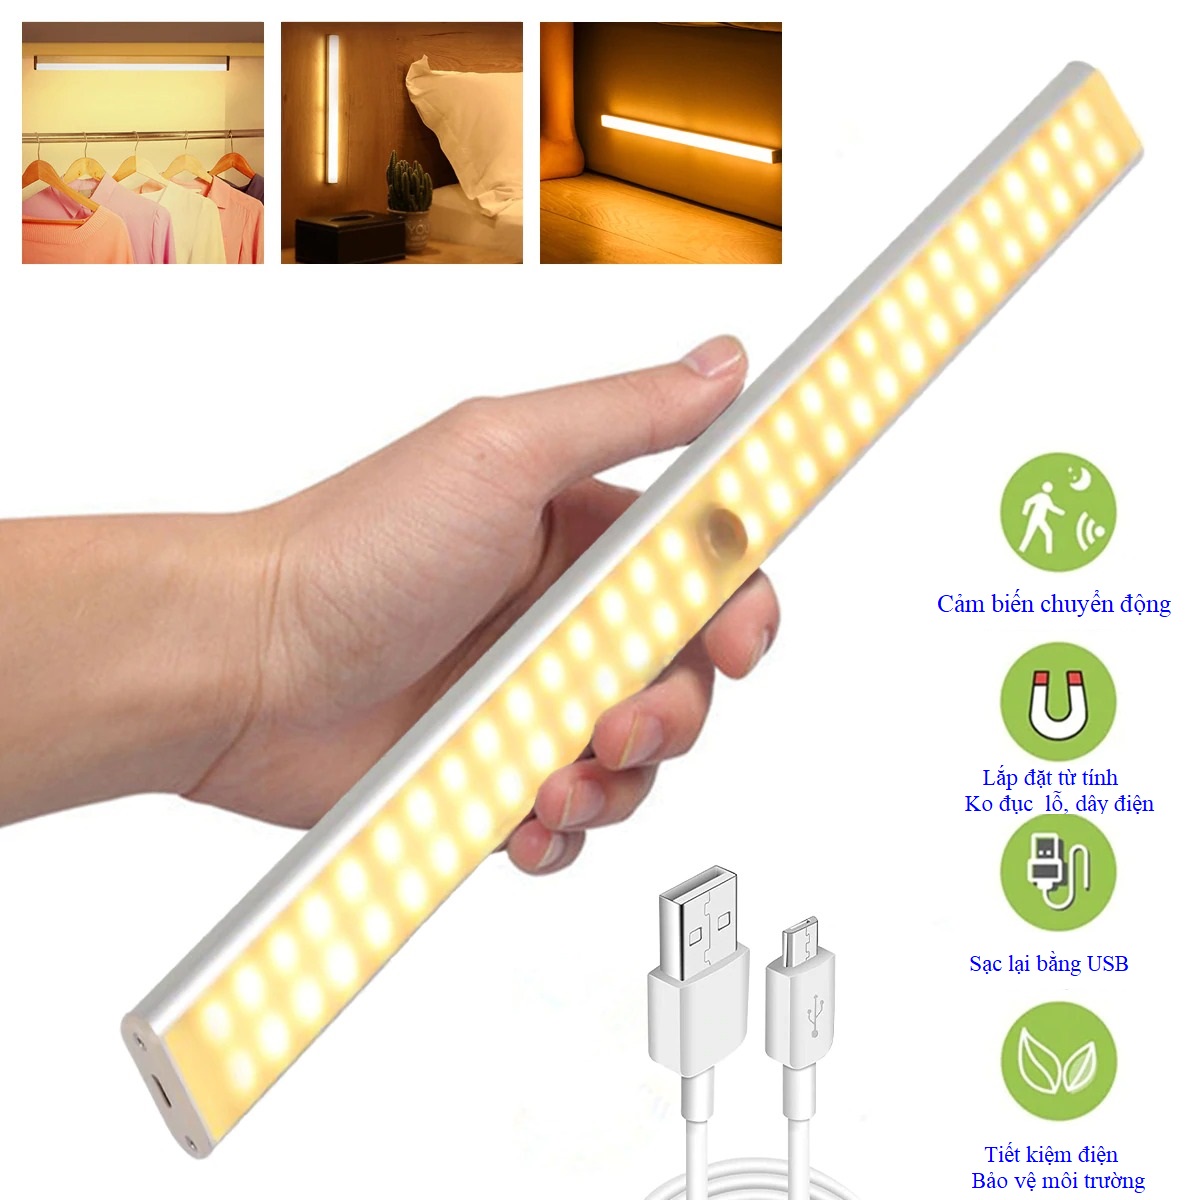 Đèn cảm ứng gắn cầu thang, tủ đồ, toilet, tự động bật/tắt ánh sáng, sạc bằng USB tiện dụng